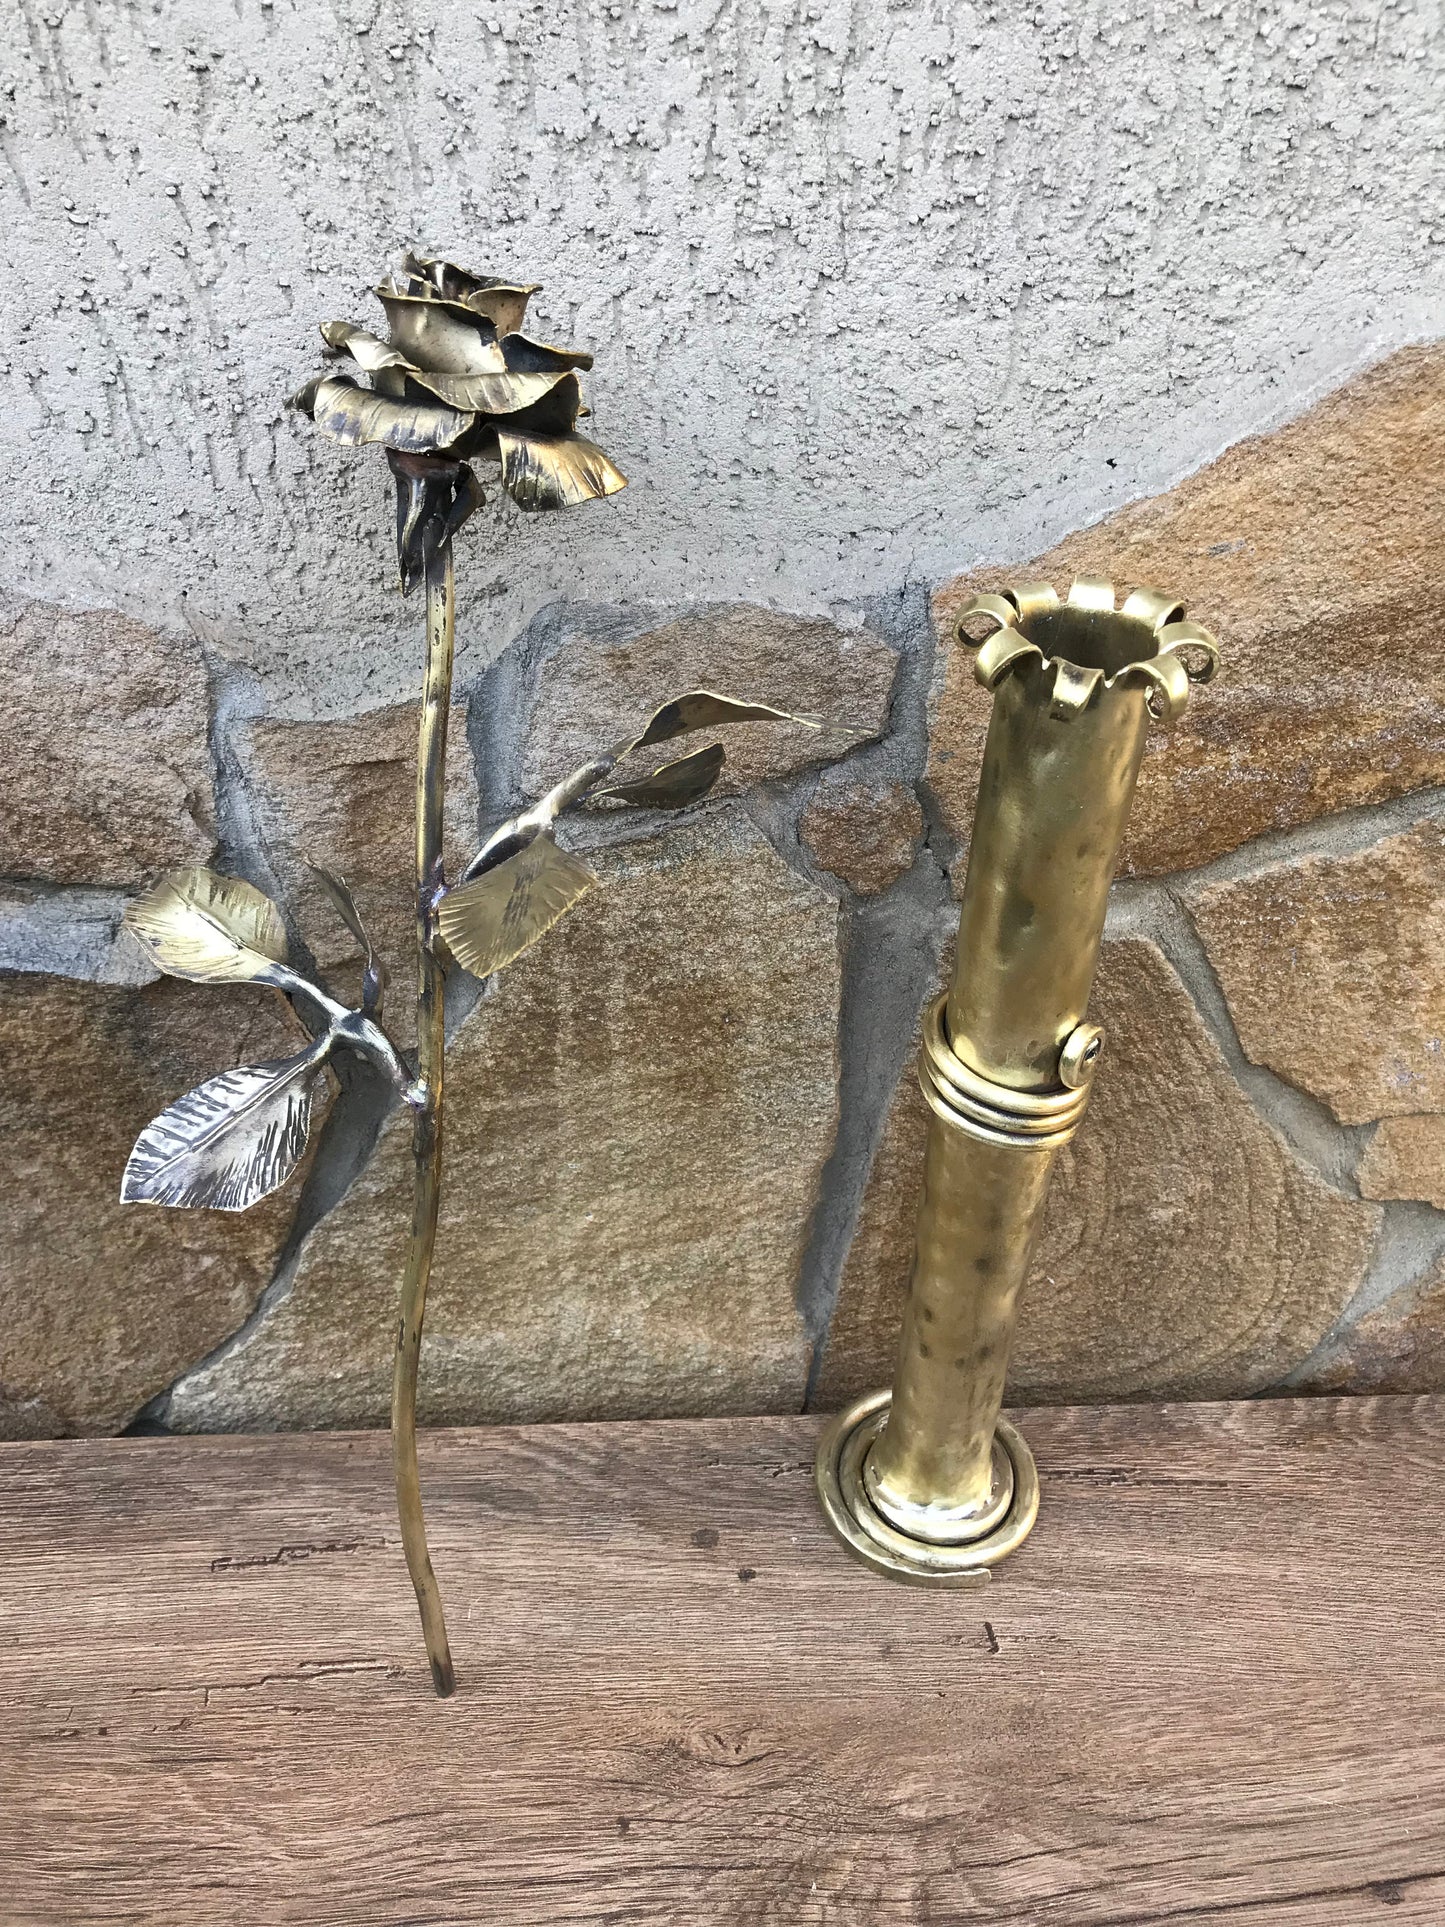 Bronze rose, bronze vase,bronze gift,bronze flower,bronze gift for wife,bronze gift for women,8th anniversary gift,bronze anniversary,bronze